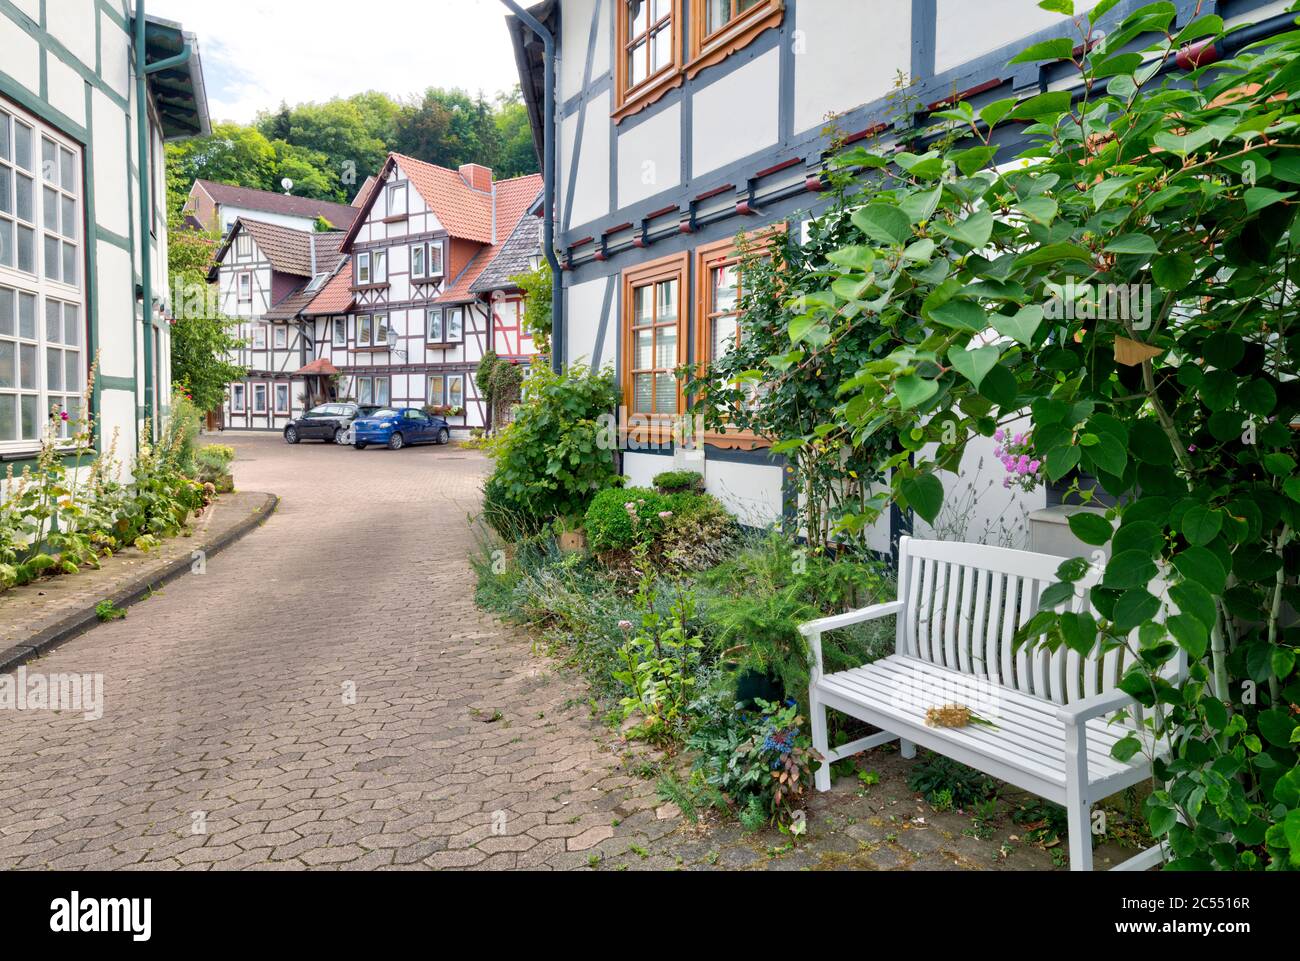 Casa facciata, finestra, panca, decorazione floreale, legno a metà, Bad Sooden-Allendorf, Hesssen, Germania, Europa Foto Stock